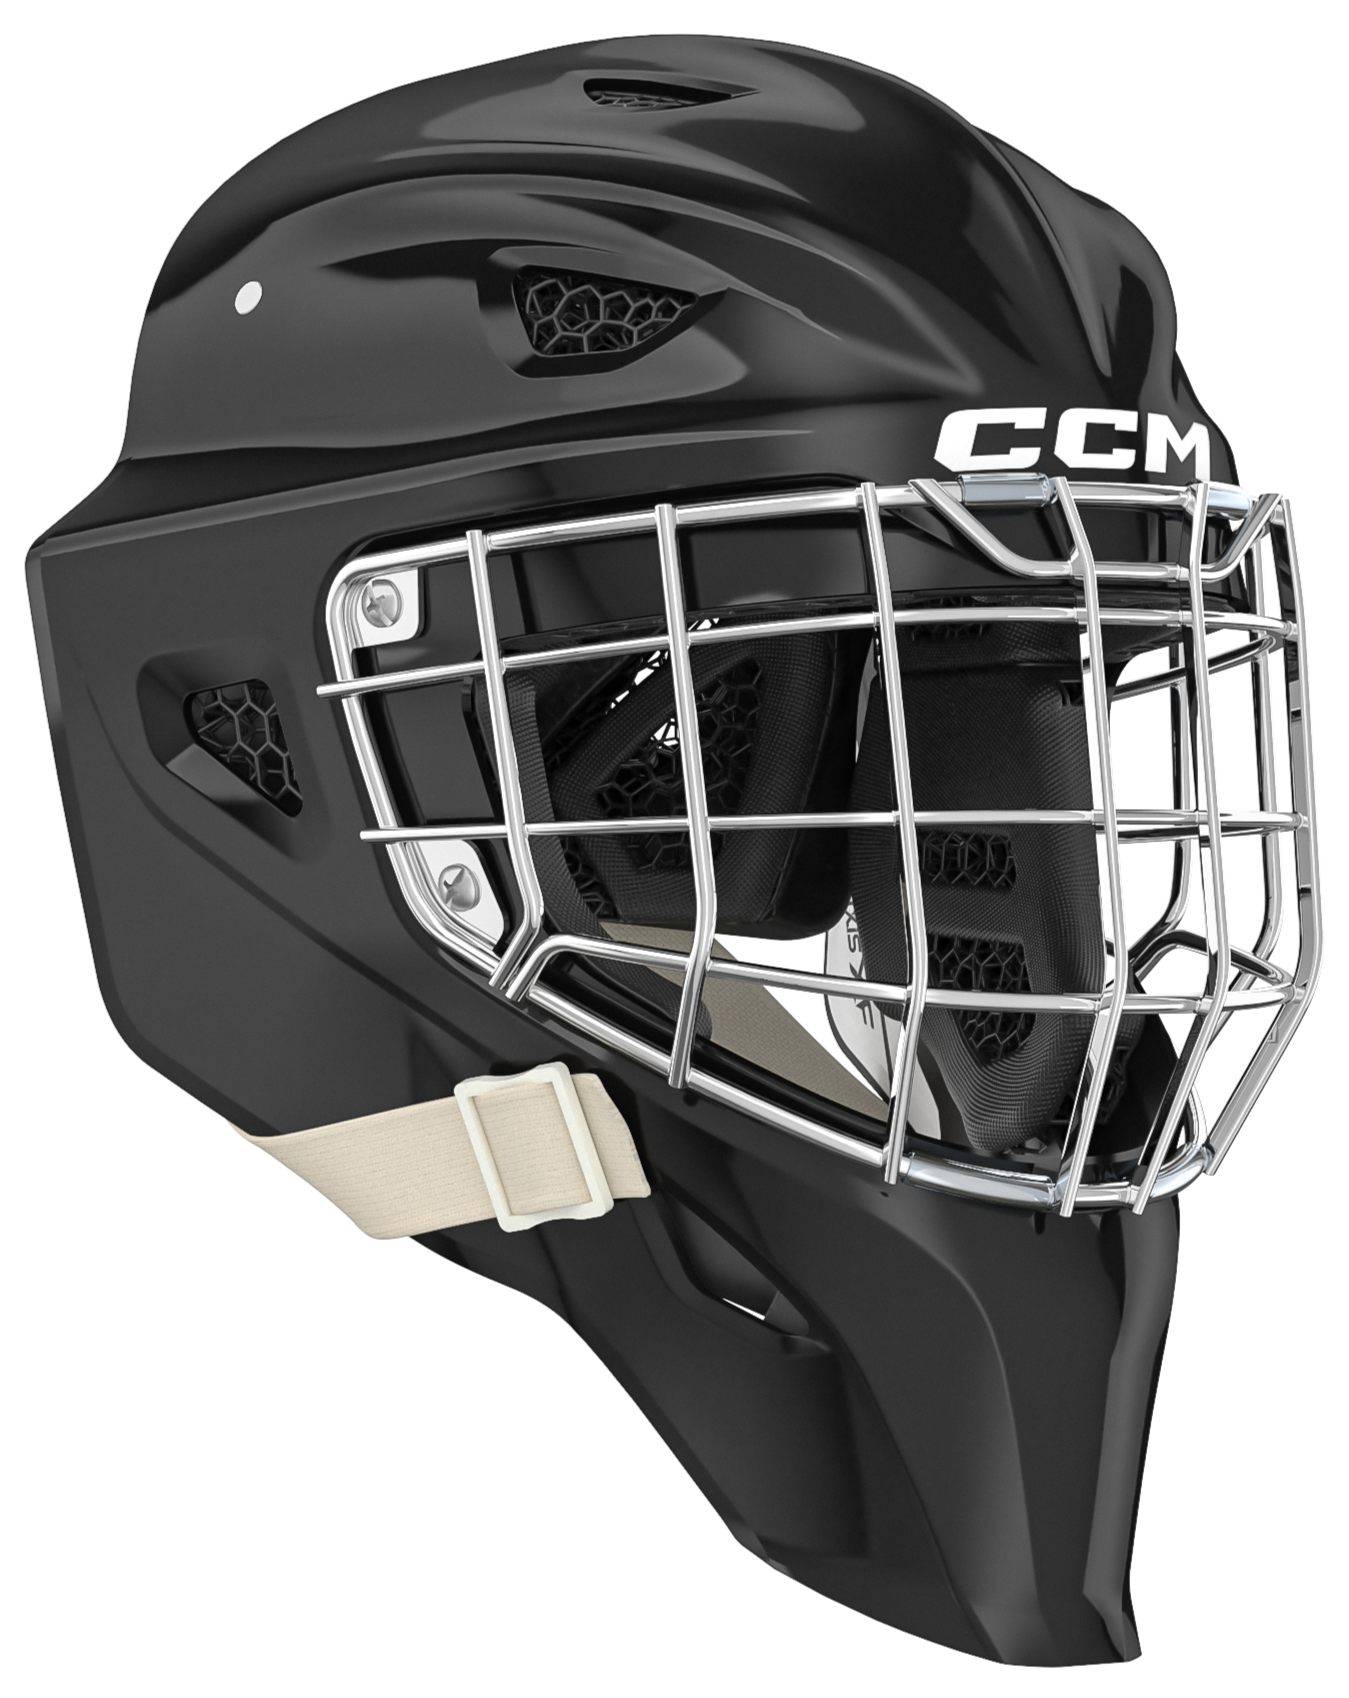 CCM Axis XF Senior Goalie Mask